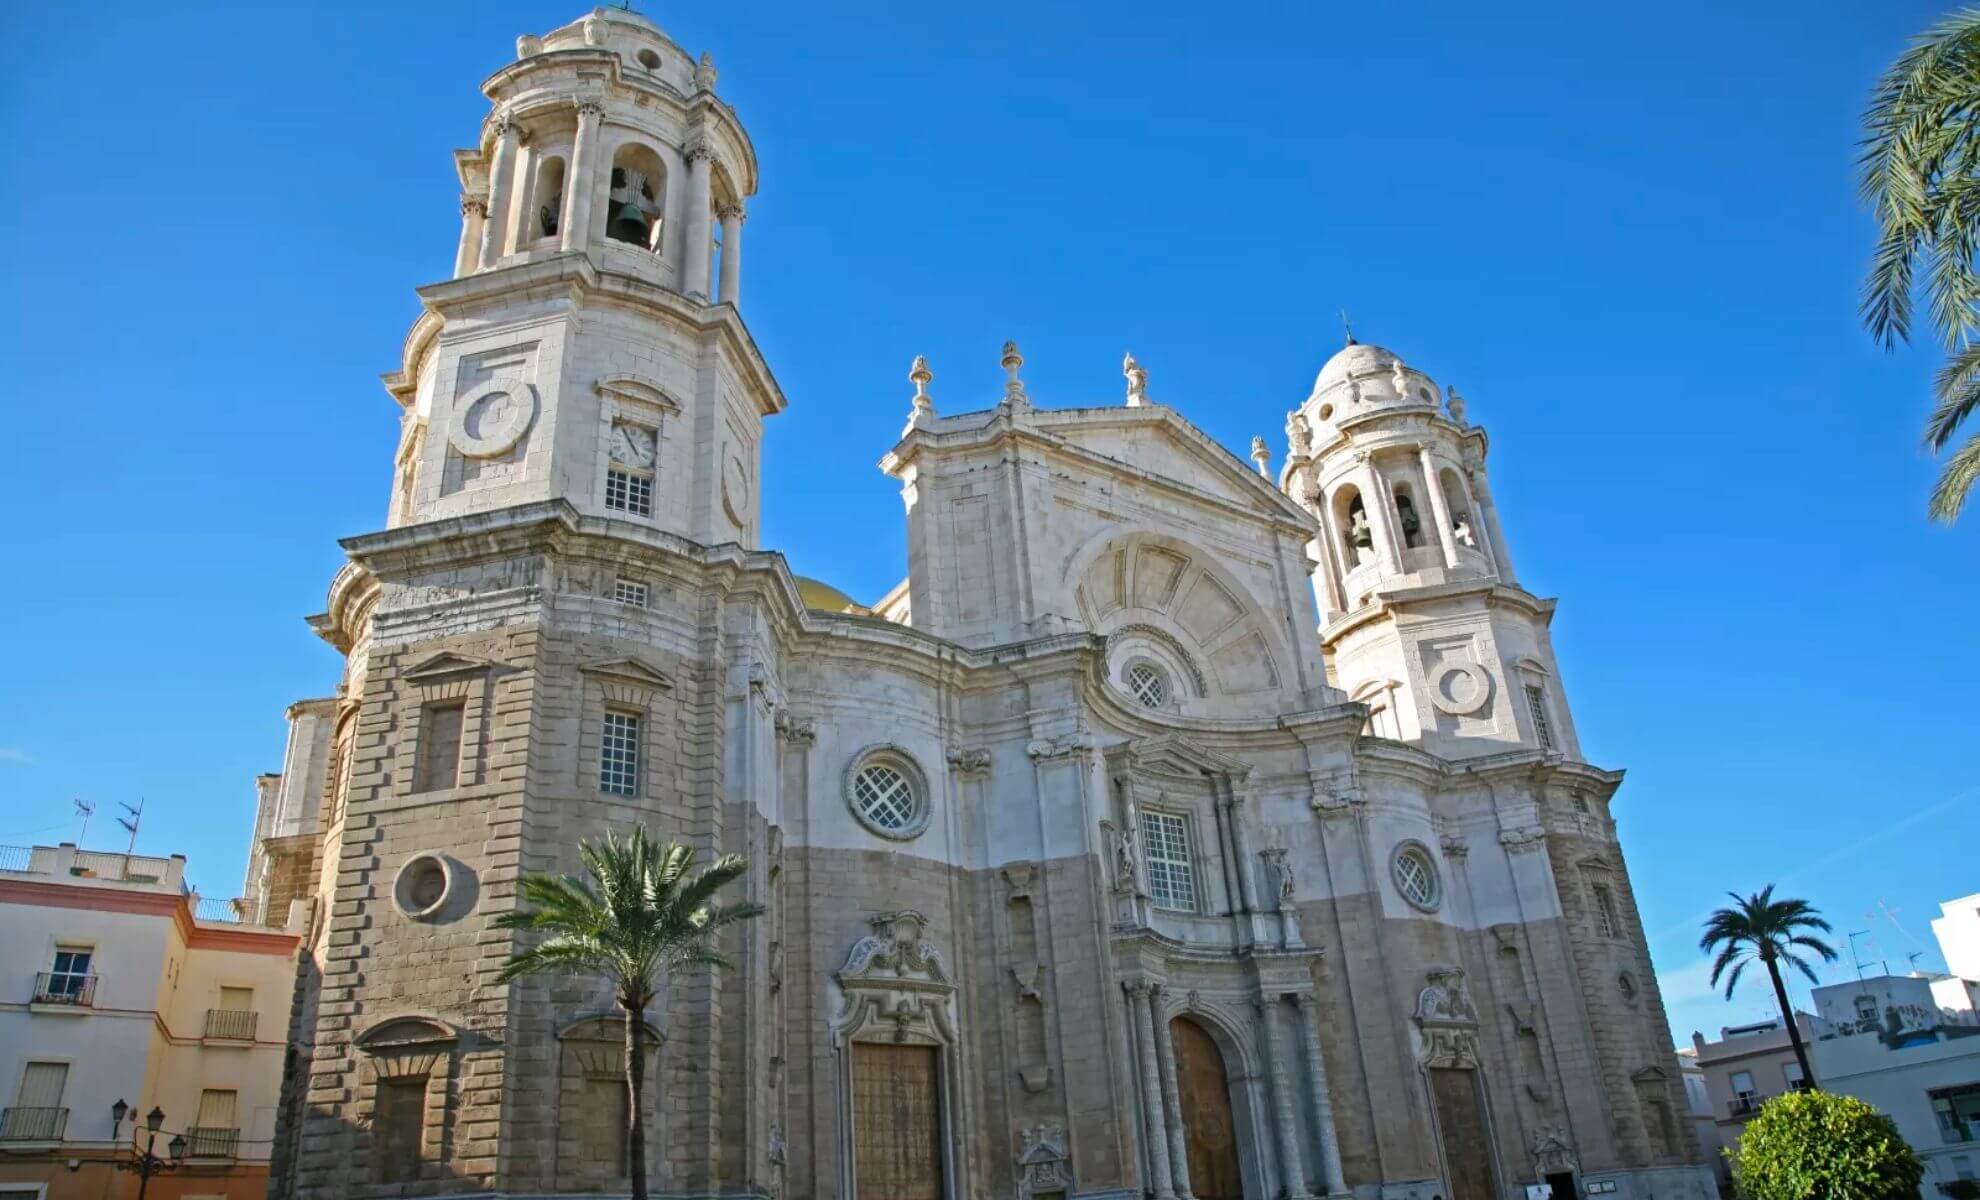 La cathédrale de Cadix, la « Santa Cruz sobre las Aguas », Espagne